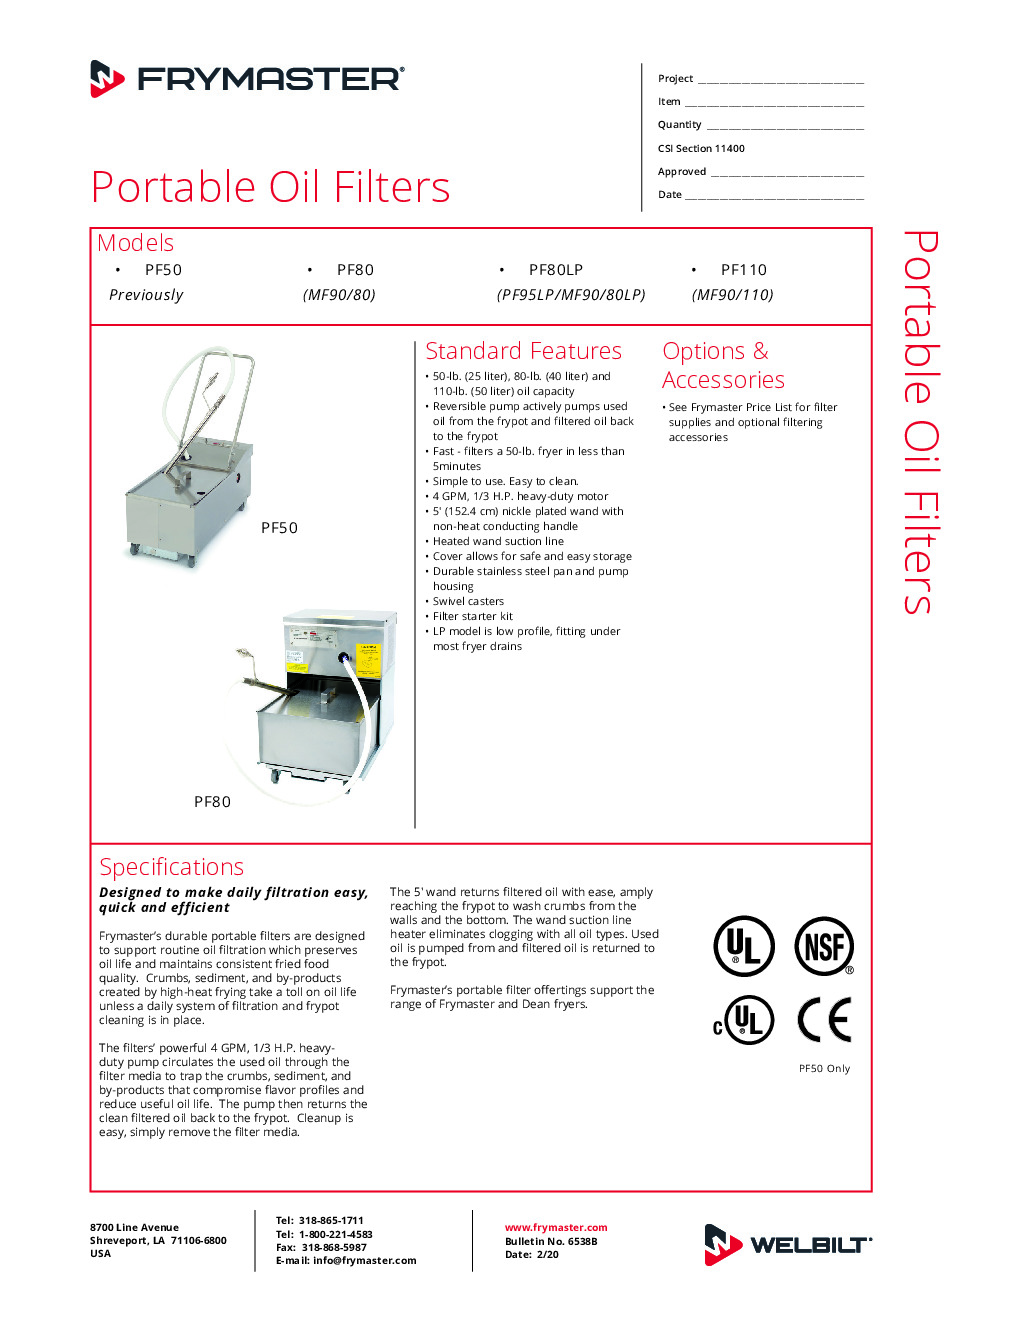 Frymaster PF80S Mobile Fryer Filter w/ 80-Lb Oil Capacity, Gravity Drain, Filter Starter Kit